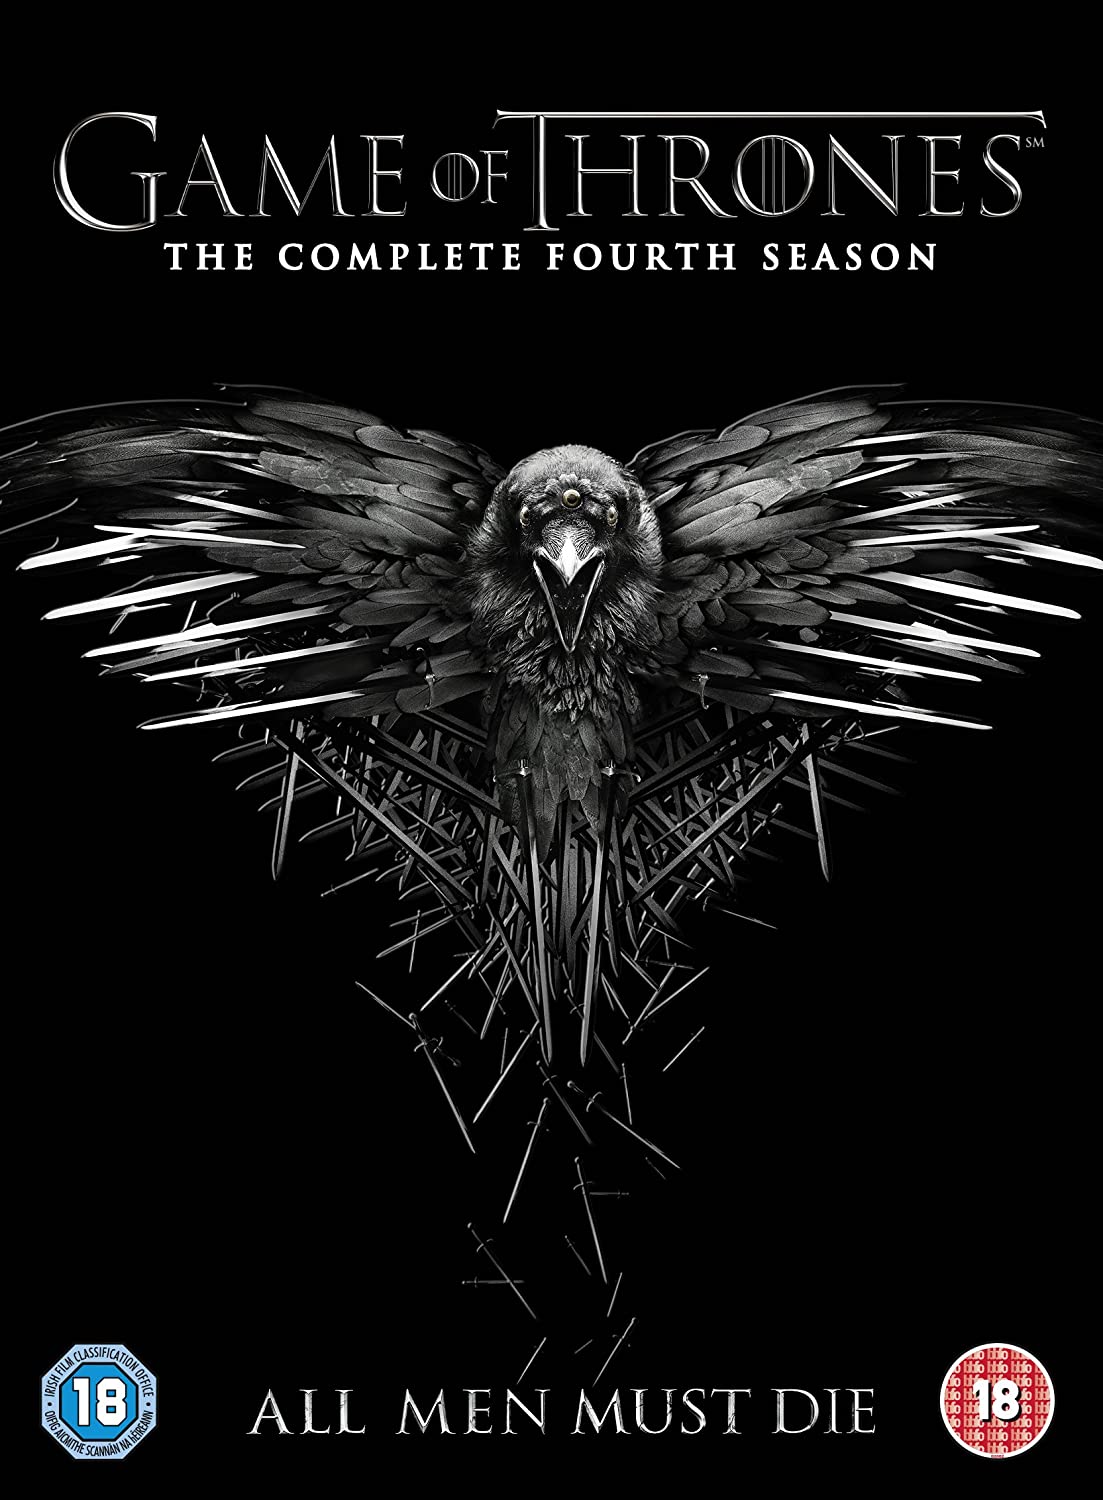 ดูหนังออนไลน์ฟรี Game of Thrones (2014) Season 4-EP.3 มหาศึกชิงบัลลังก์ ปี 4 ตอนที่3